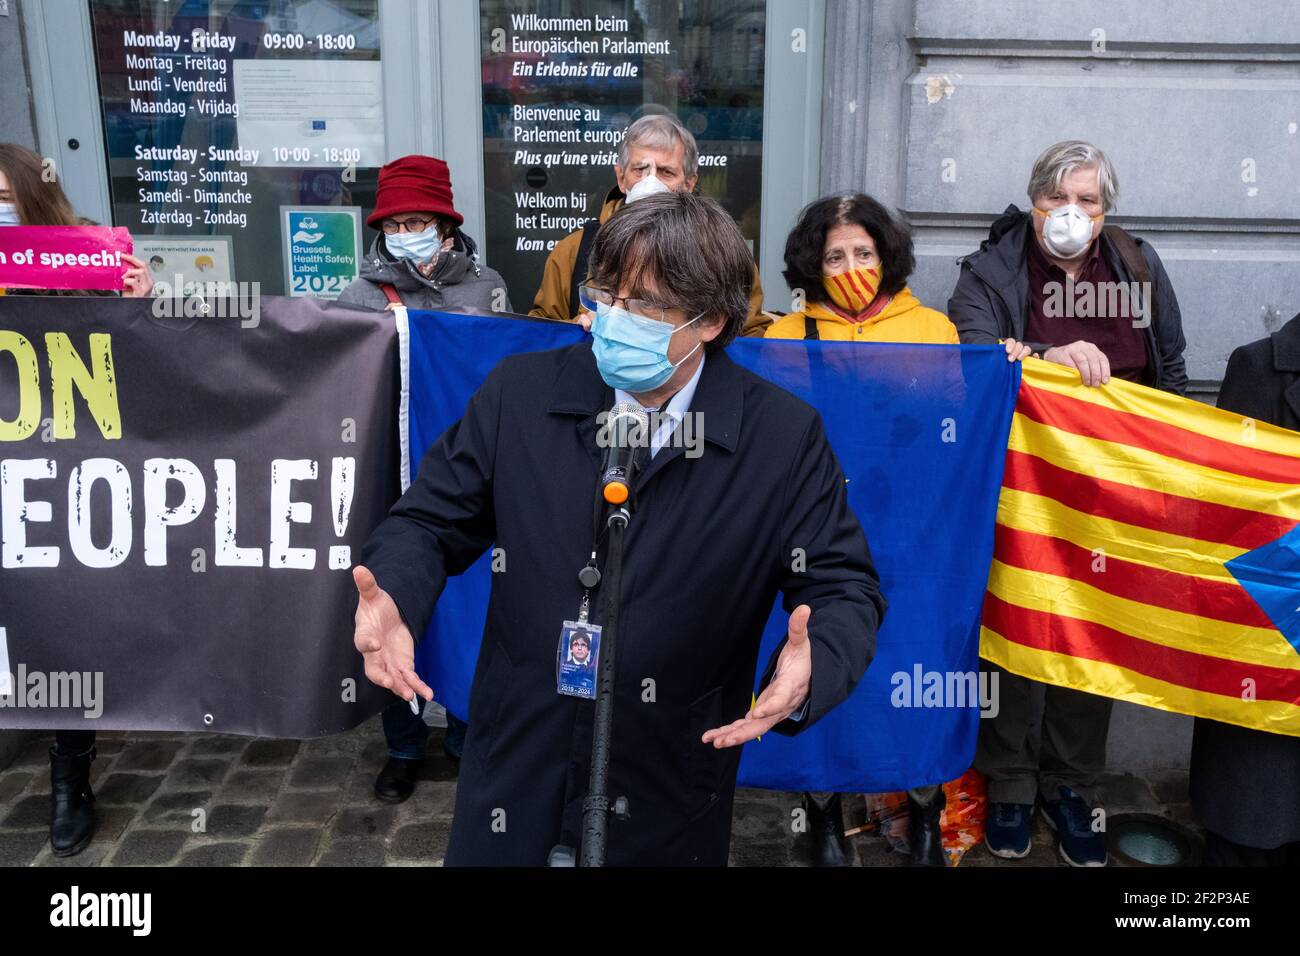 Levée de l'immunité parlementaire des eurodéputés indépendants catalans lors de la session plénière du Parlement européen. Bruxelles le 08/03/2021. Banque D'Images